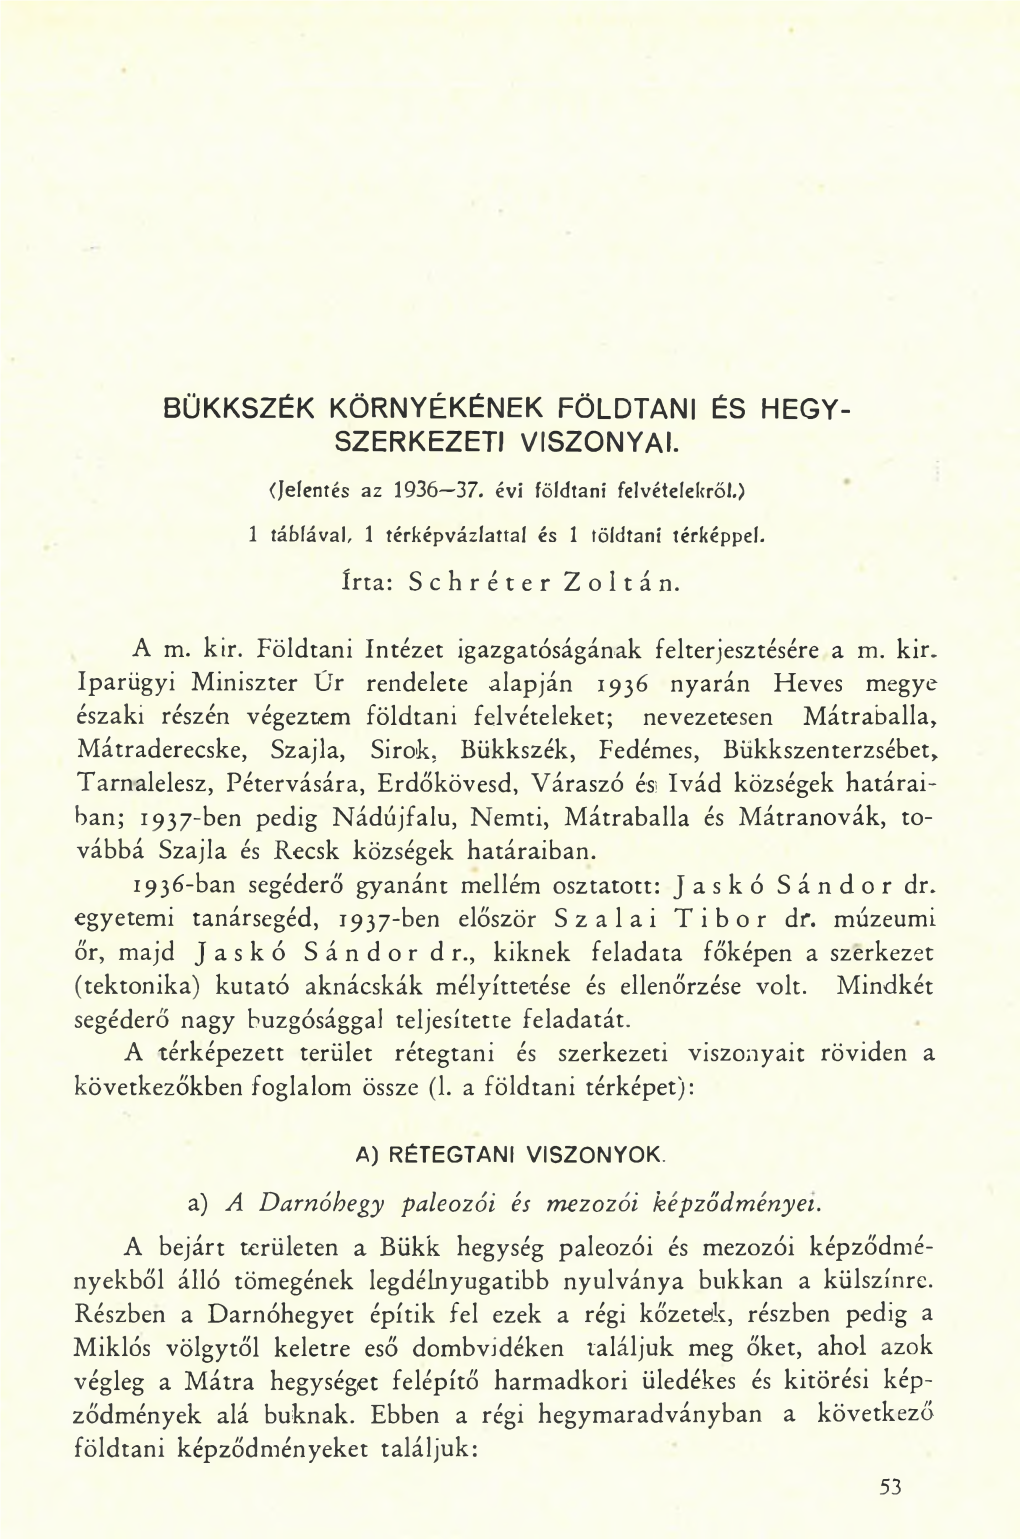 A Magyar Állami Földtani Intézet Évi Jelentése (1936-38) 2.Sz